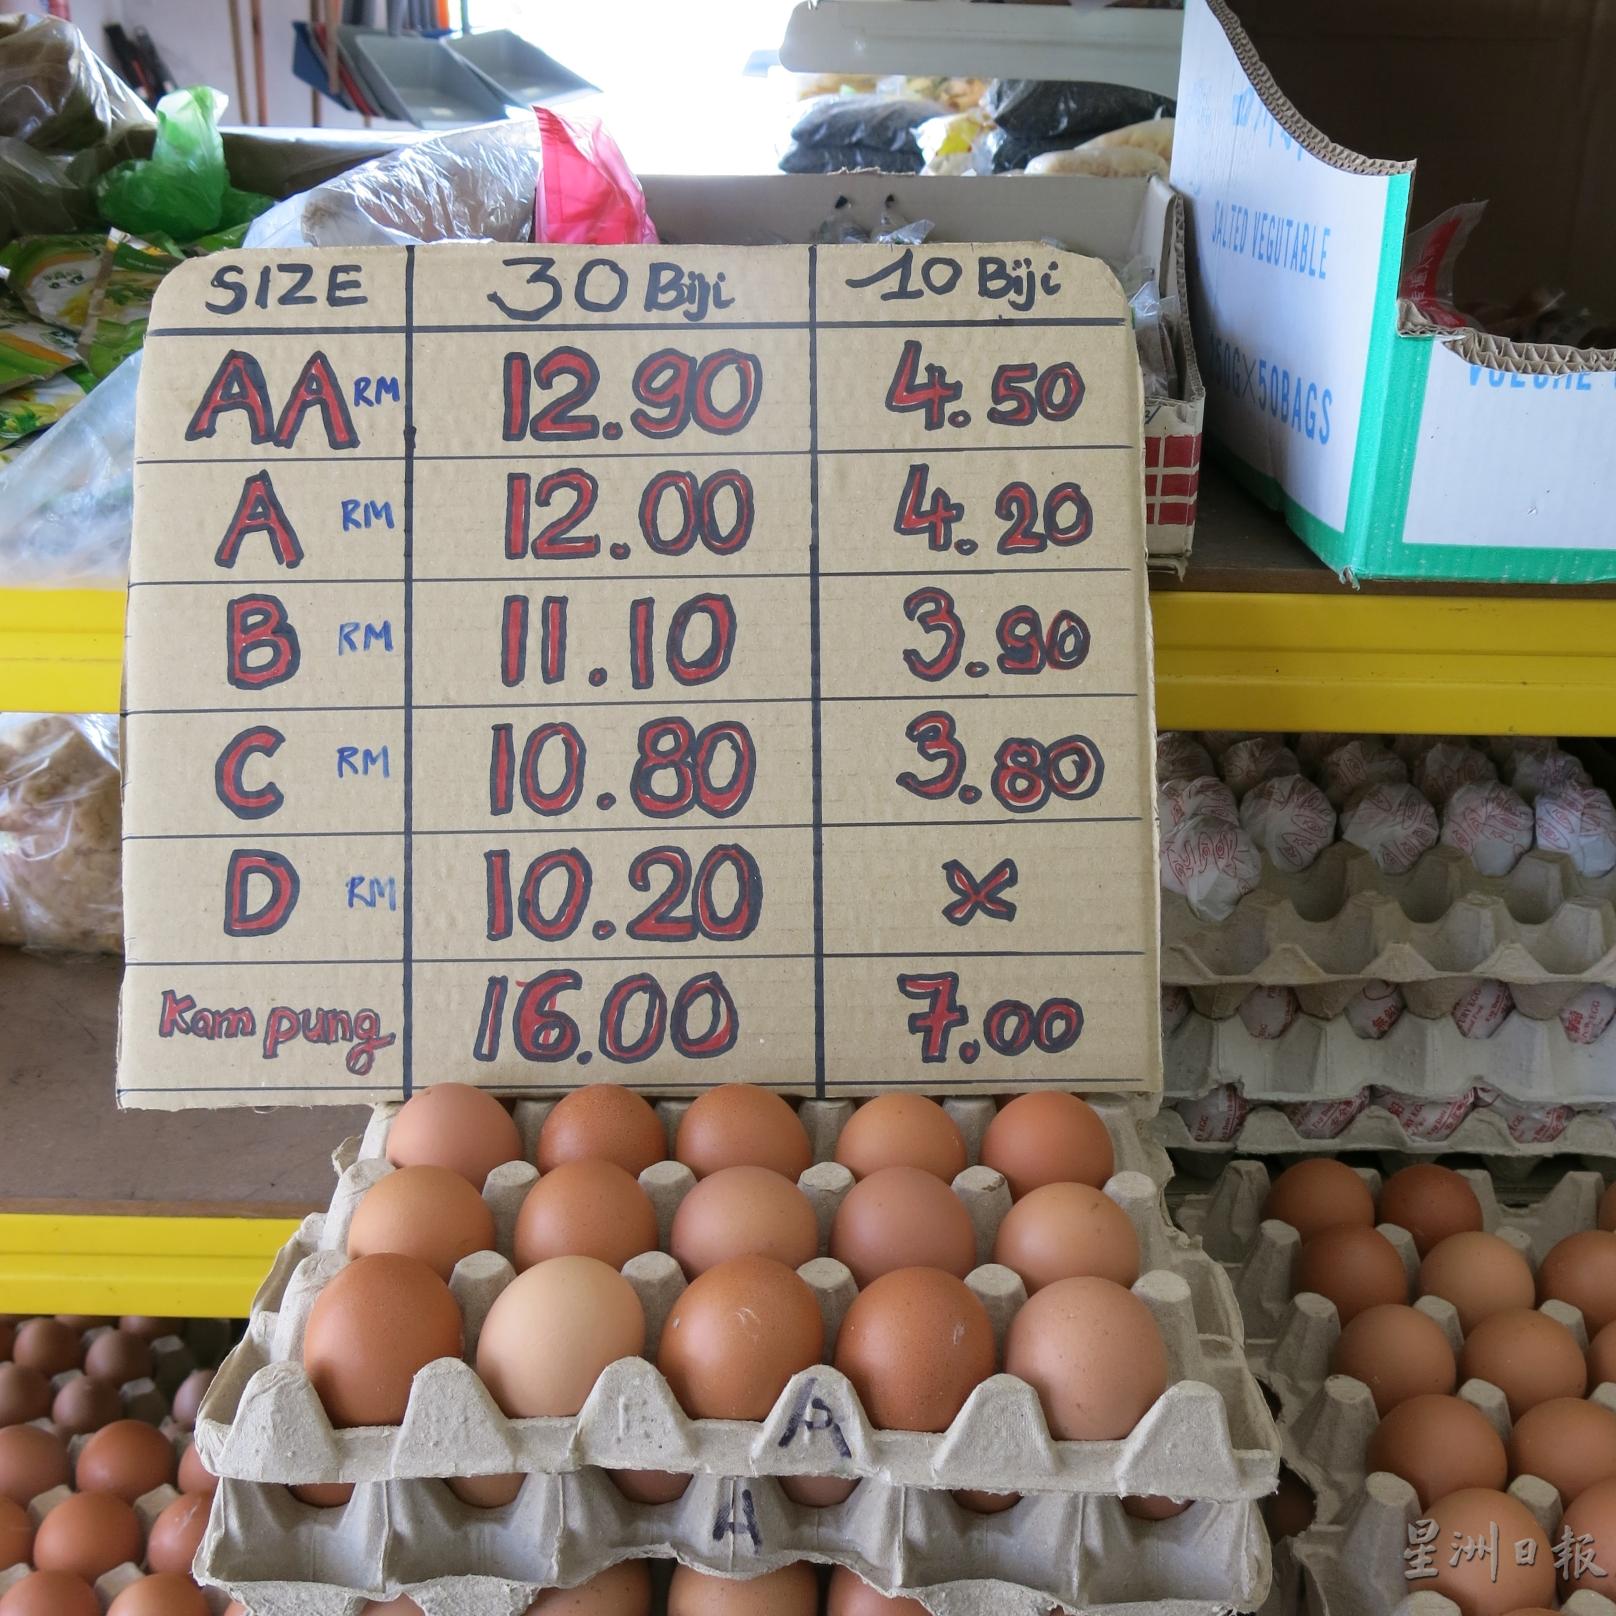 不同级别的鸡蛋有不同的价格，零售商店售卖鸡蛋，价格也稍有不同。